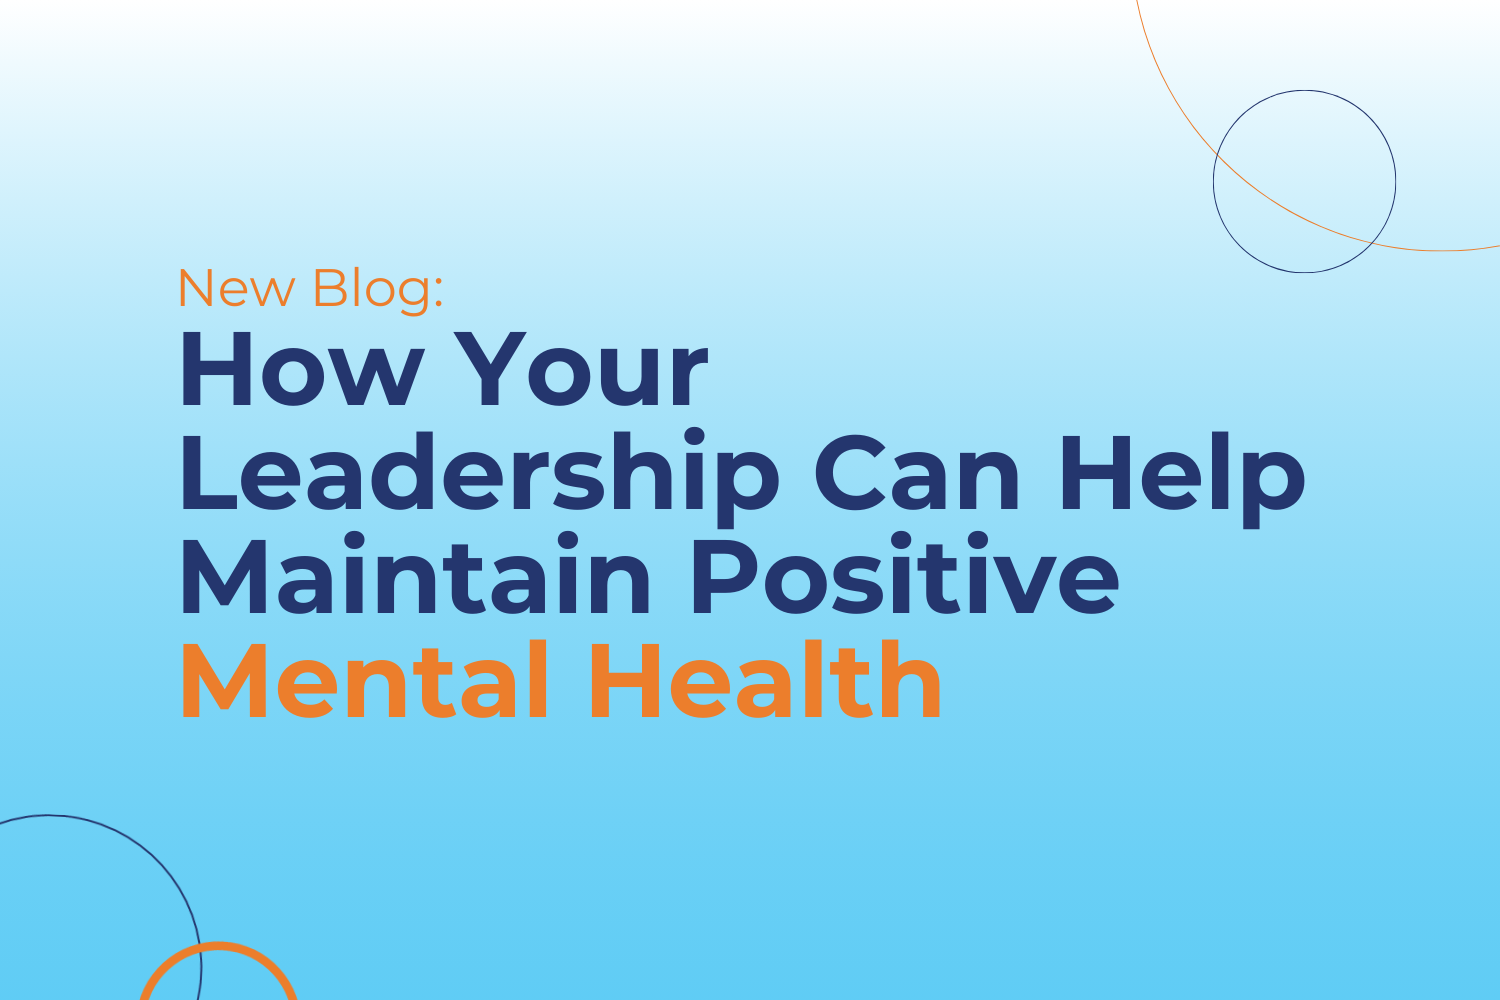 Mental Health in leadership